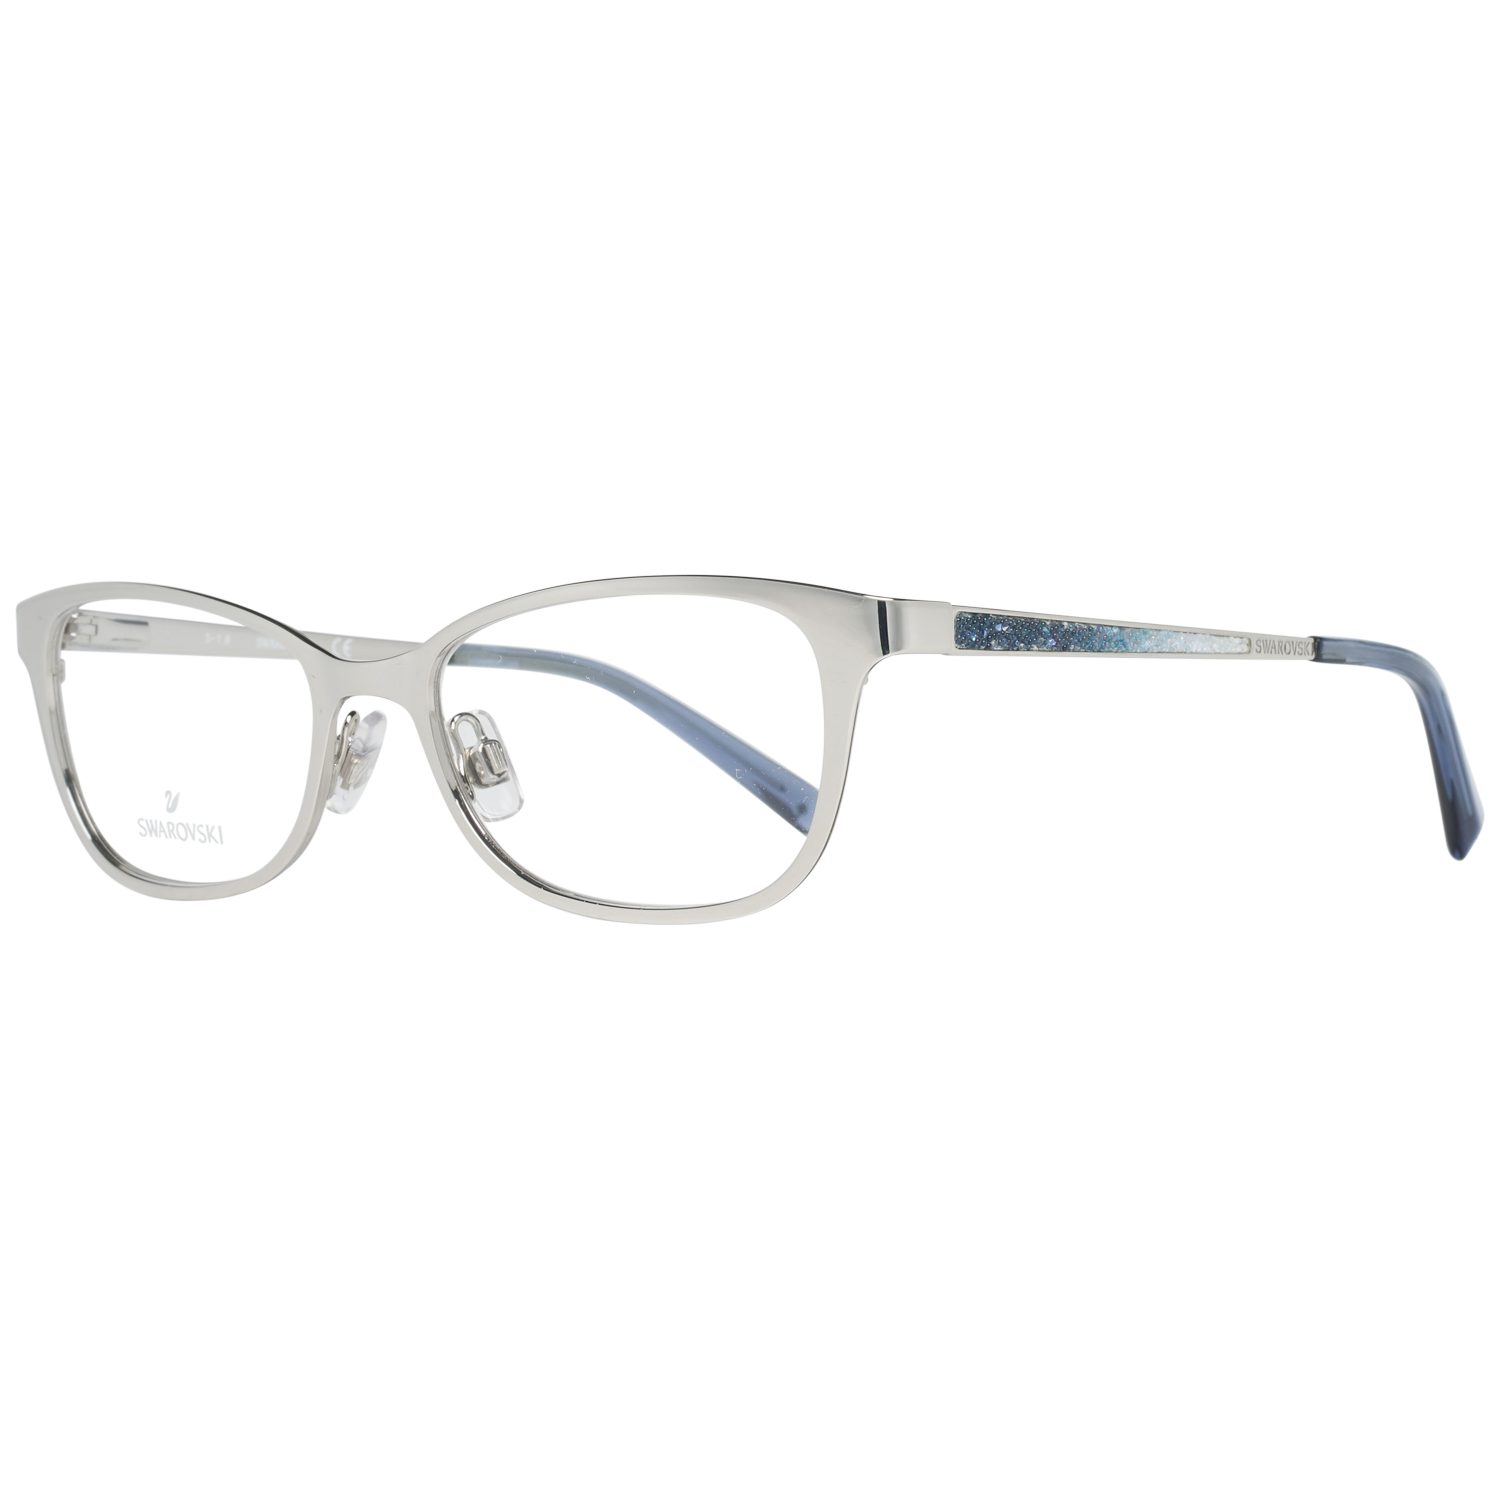 Swarovski Frames Swarovski Women Glasses Optical Frame SK5277 016 52 Eyeglasses Eyewear UK USA Australia 